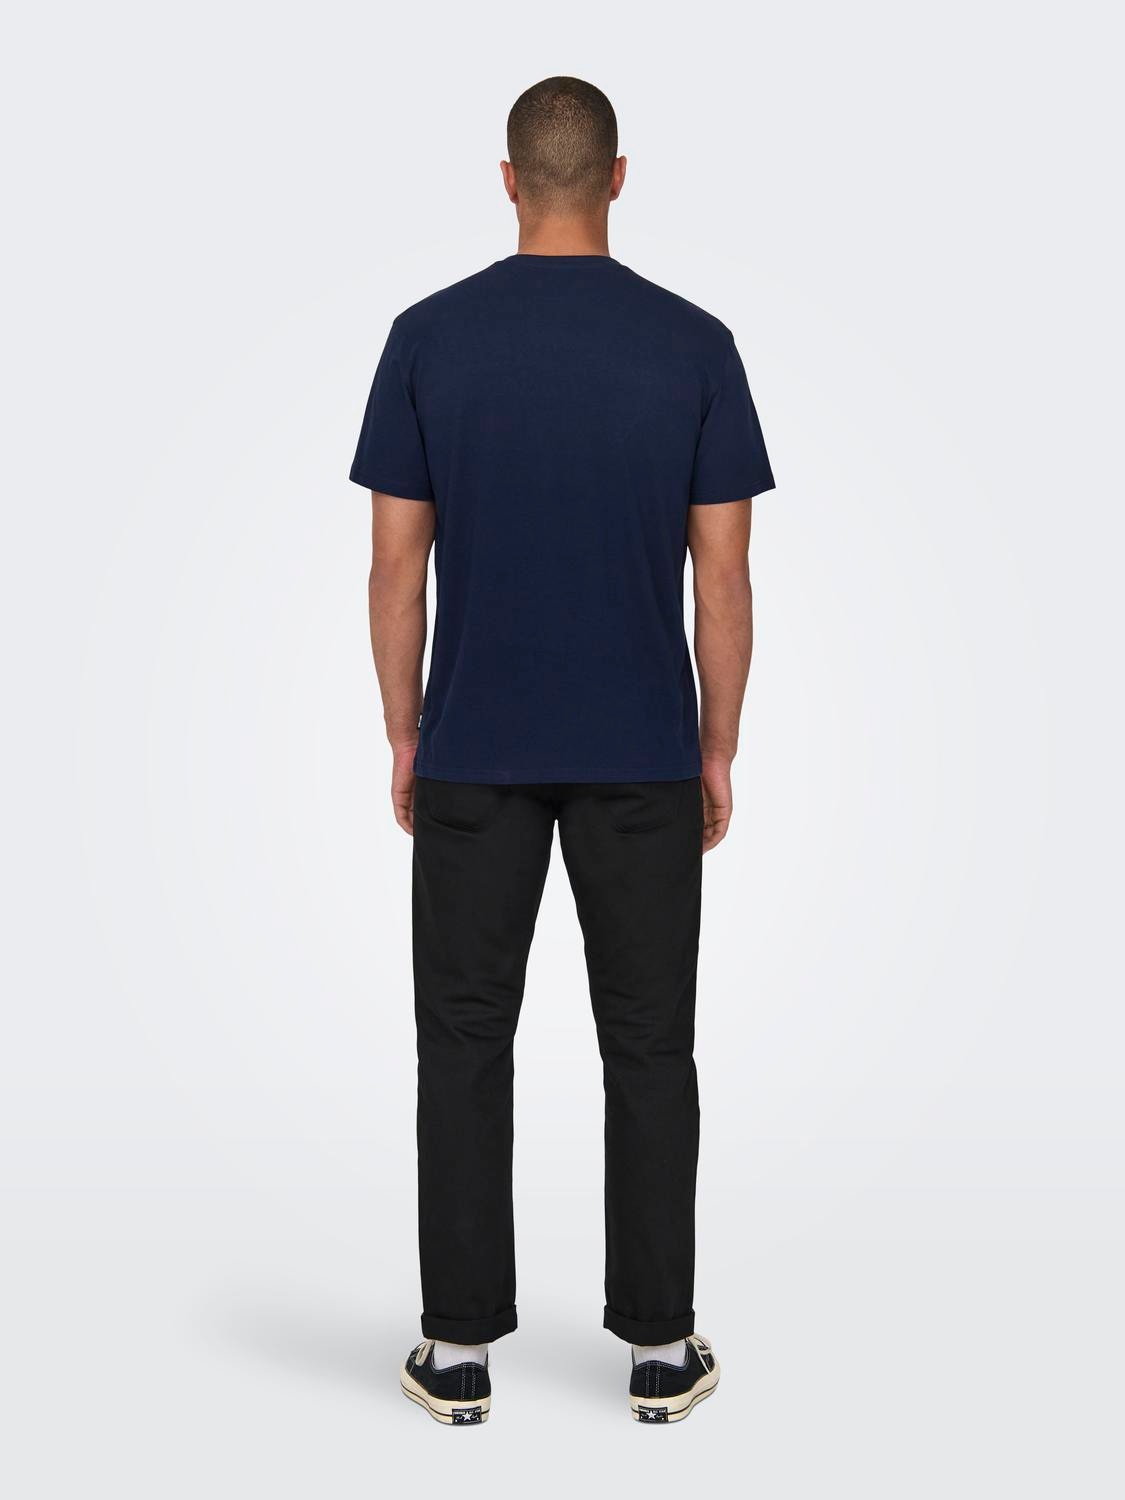 ONLY & SONS Normal geschnitten Rundhals T-Shirt -Navy Blazer - 22028688